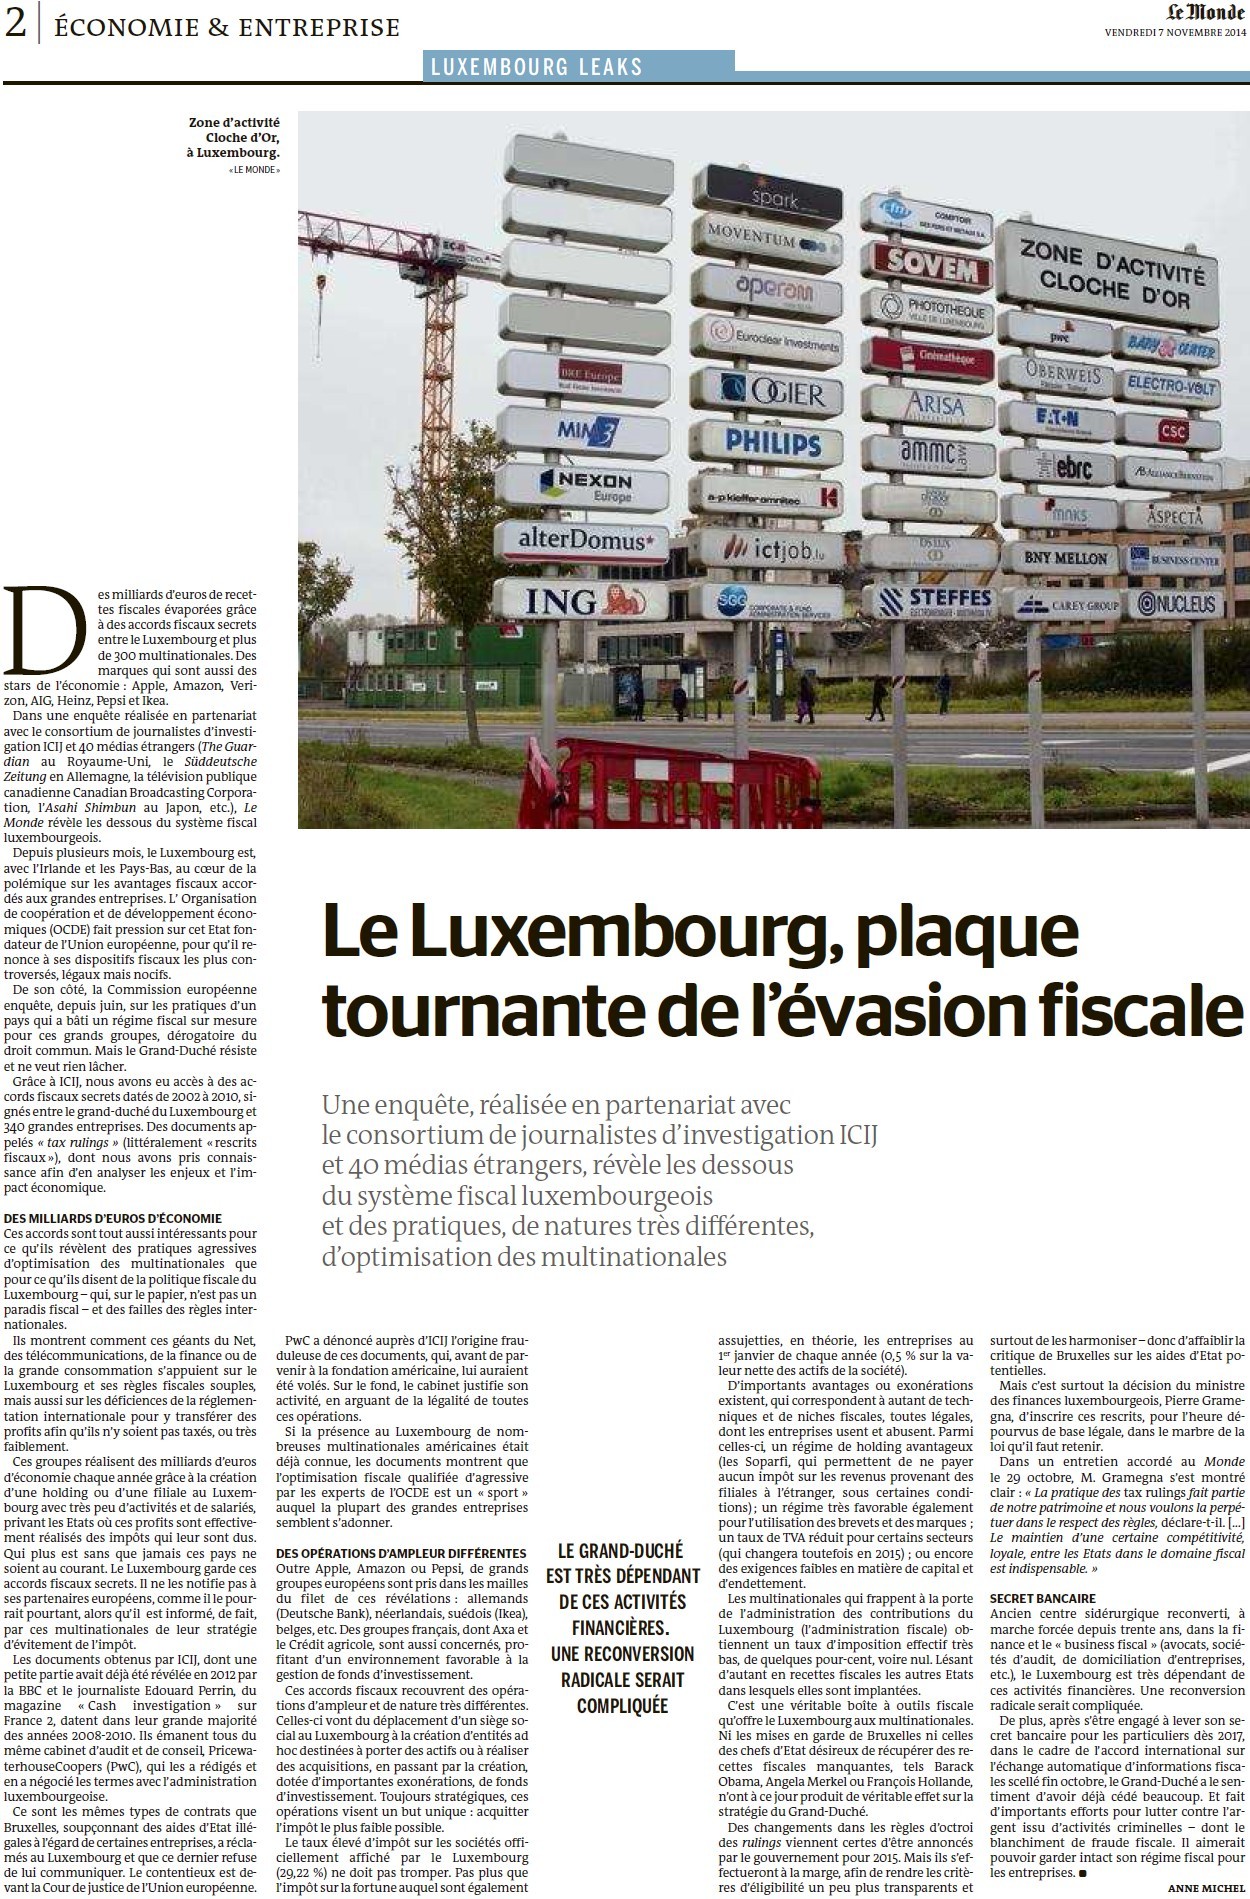 Luxembourg : révélations sur les milliards évaporés des multinationales (Le Monde) 14110605285617936712679457